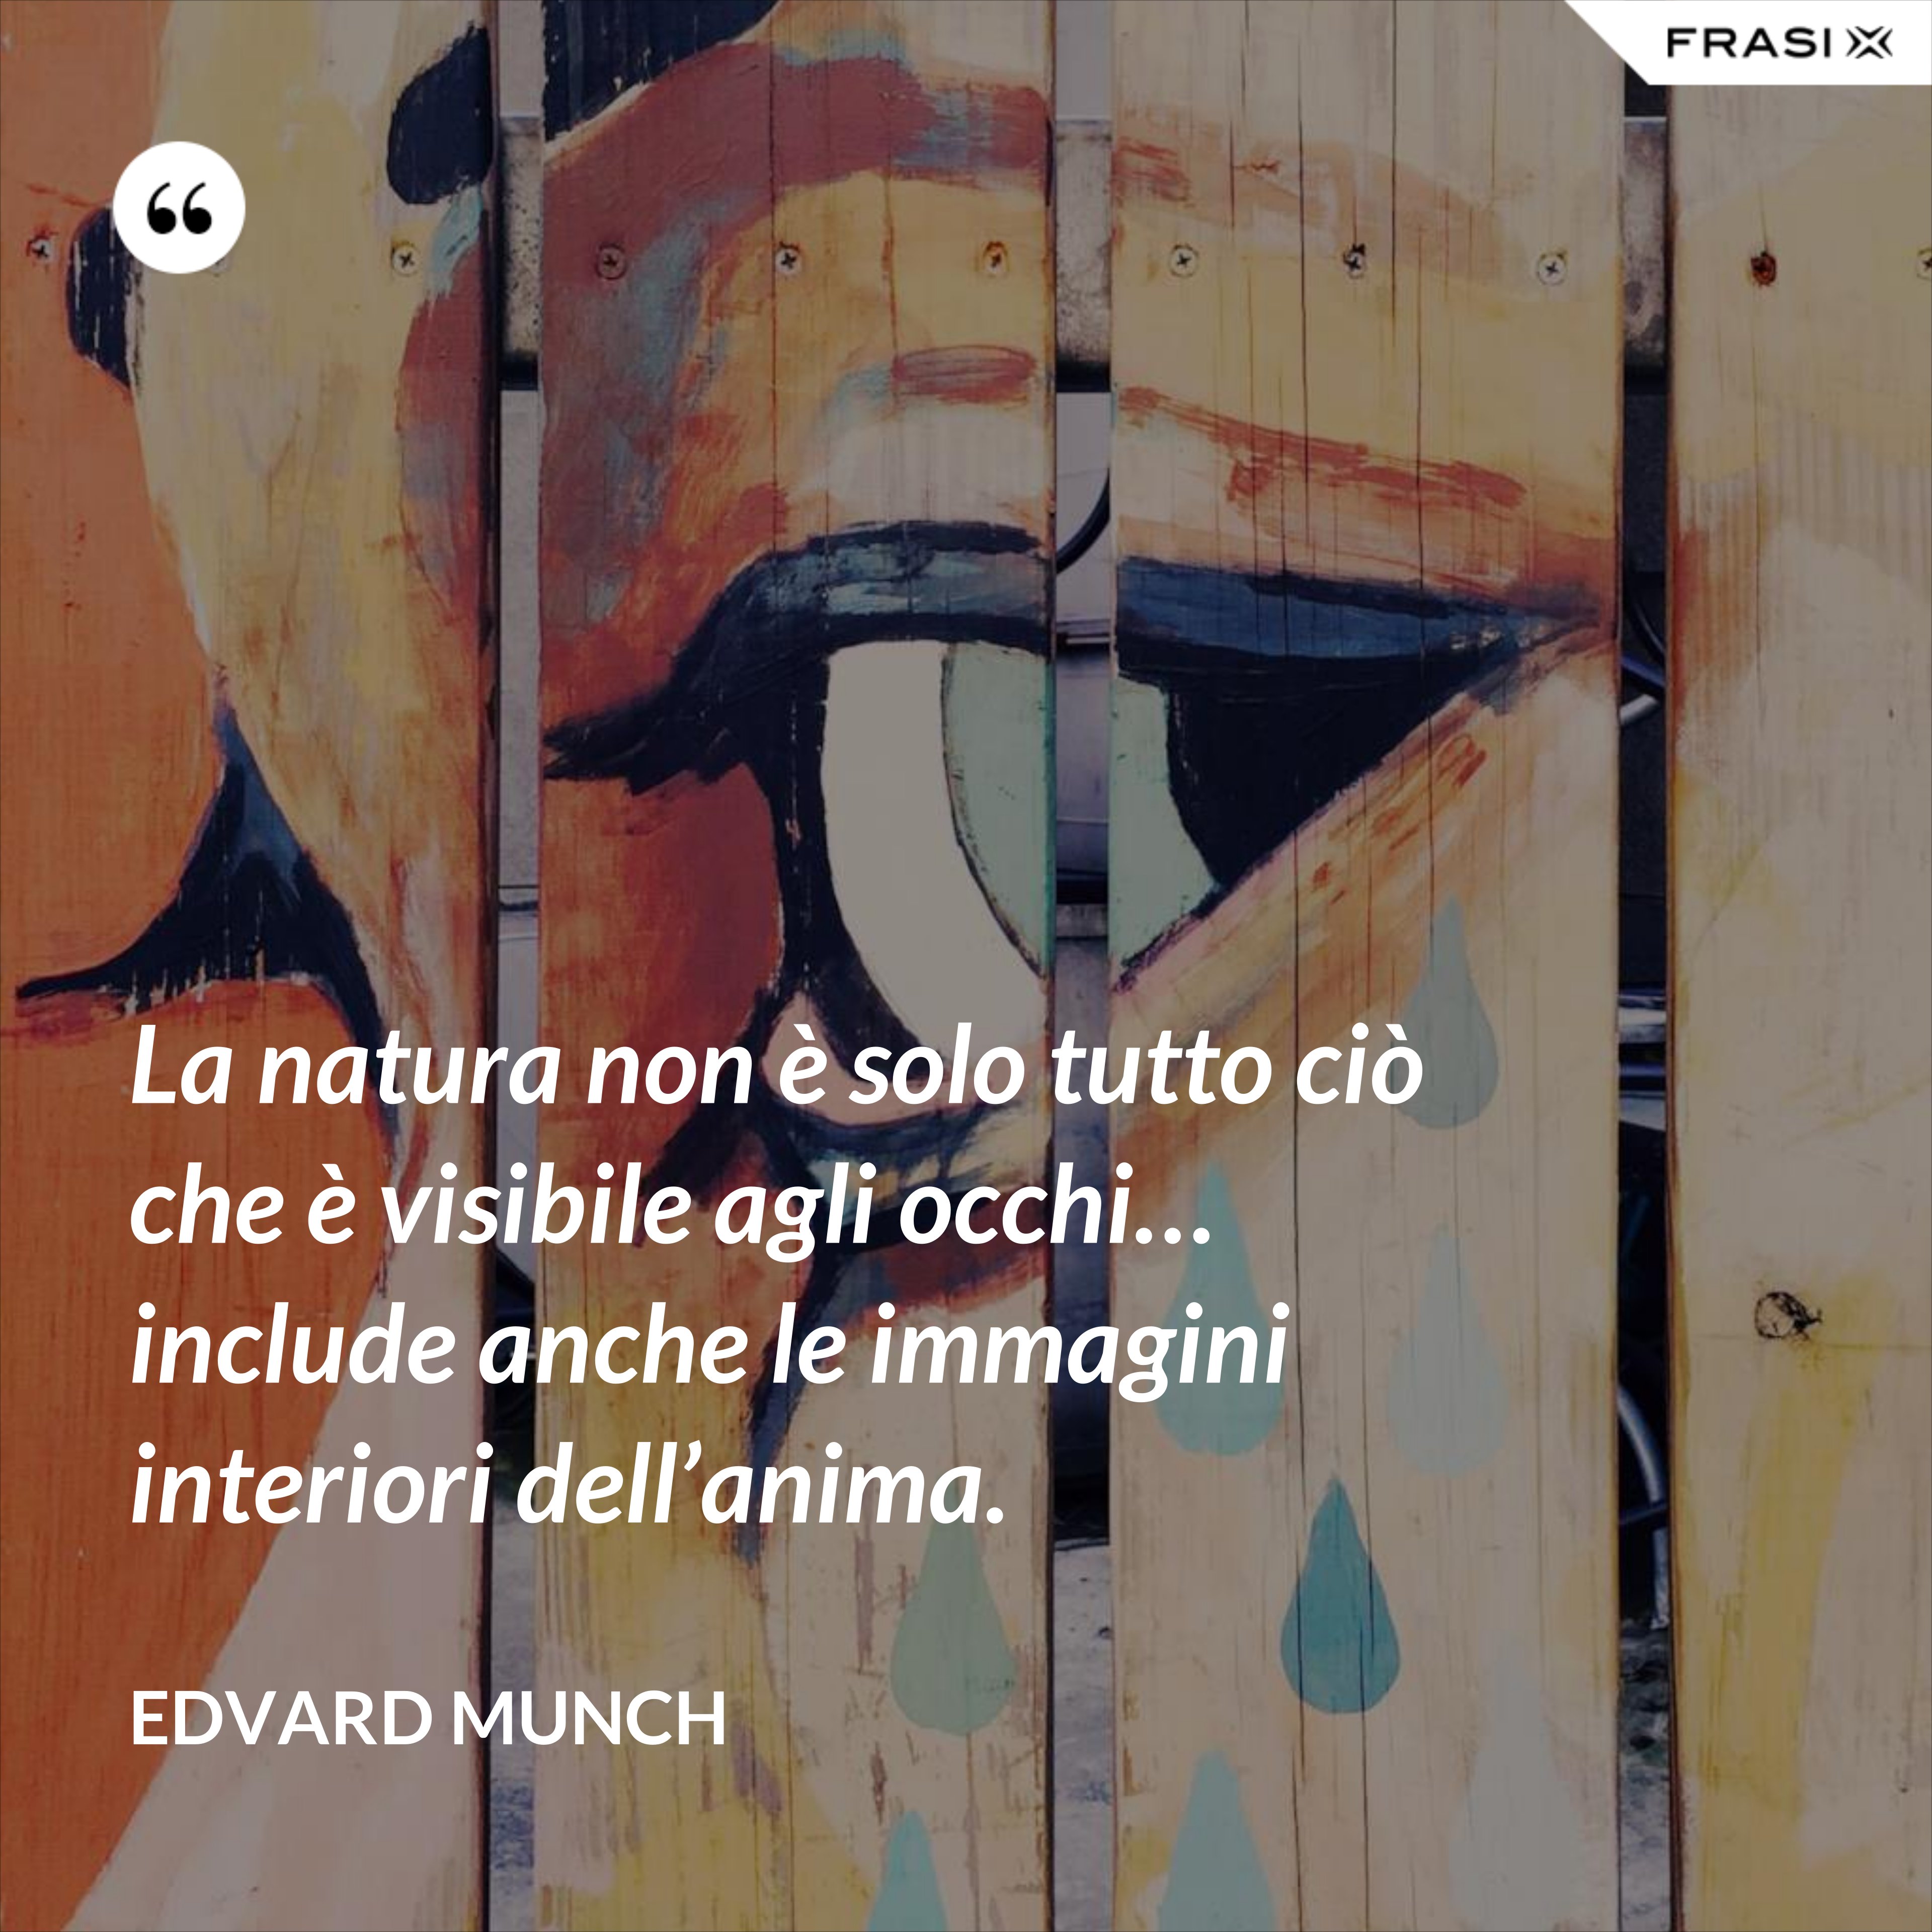 La natura non è solo tutto ciò che è visibile agli occhi… include anche le immagini interiori dell’anima. - Edvard Munch